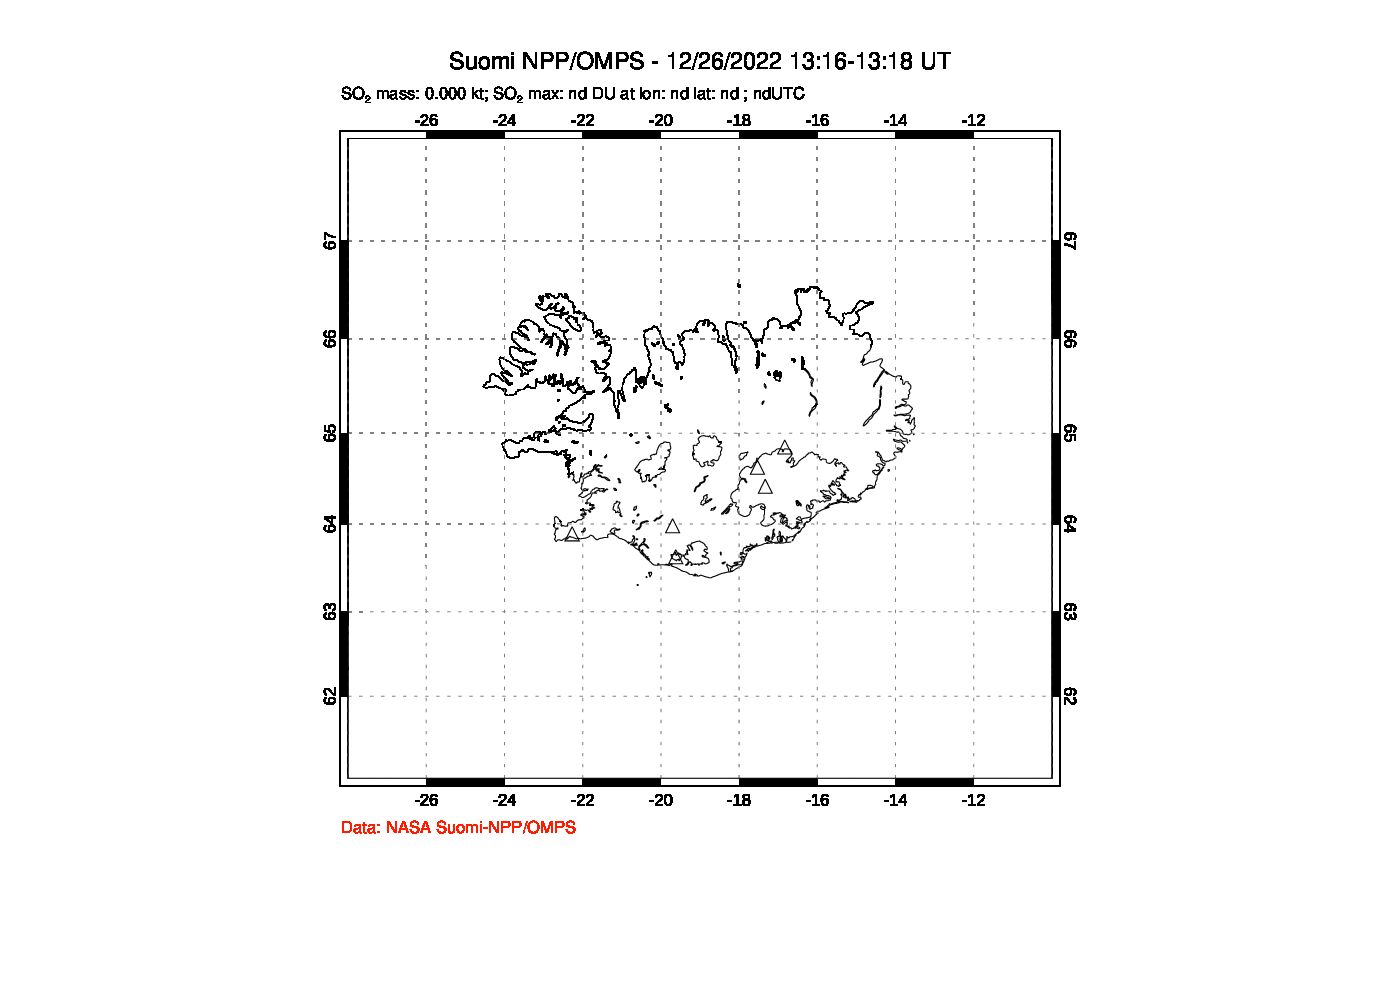 A sulfur dioxide image over Iceland on Dec 26, 2022.